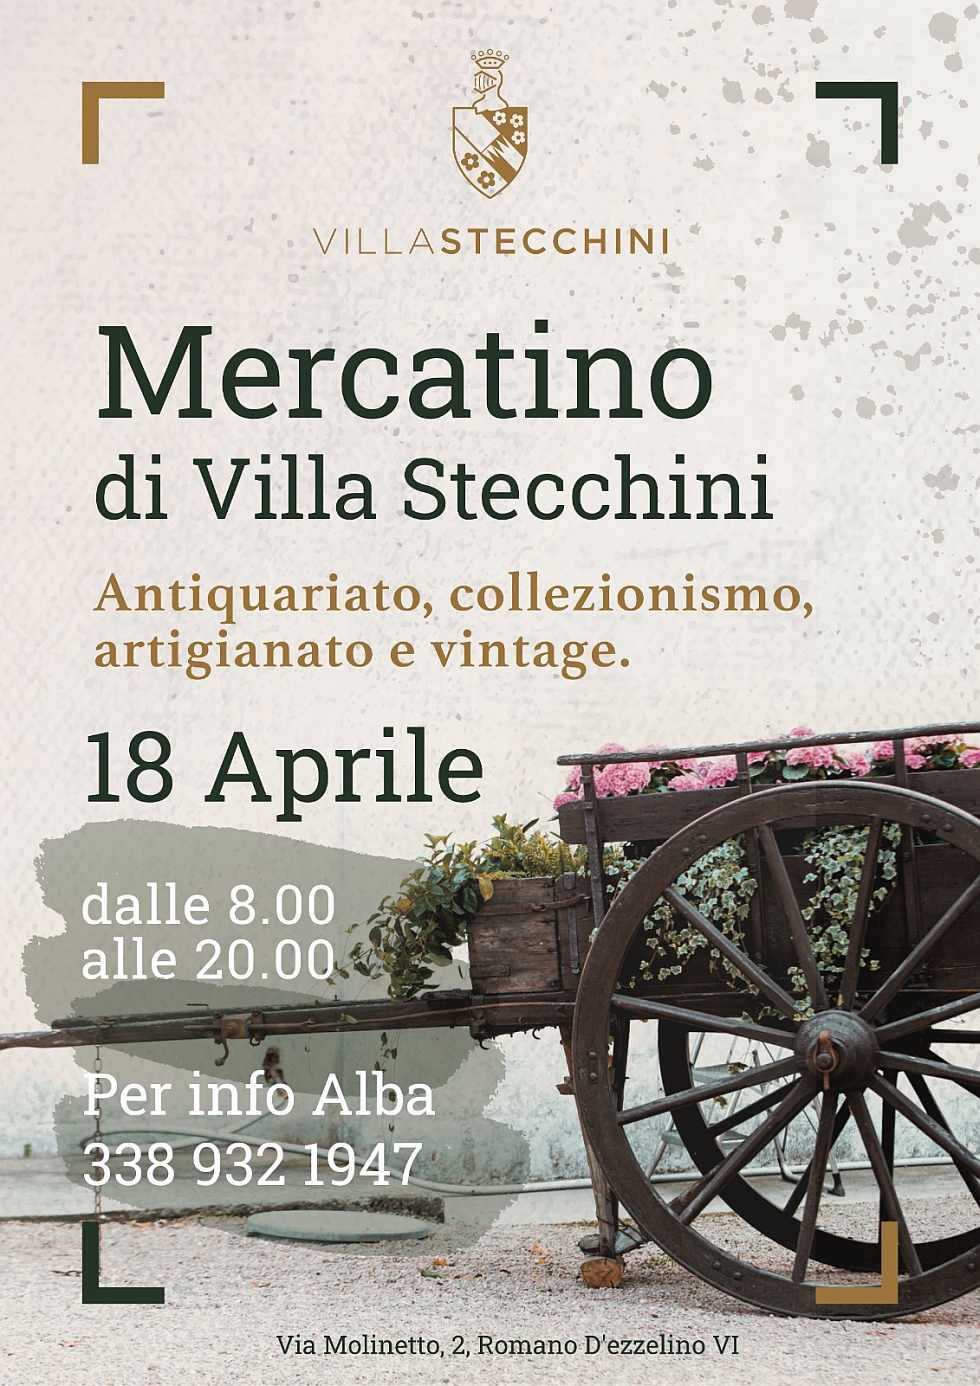 Romano D'ezzelino (VI)
"Mercatino di Villa Stecchini"
18 Aprile 2022 